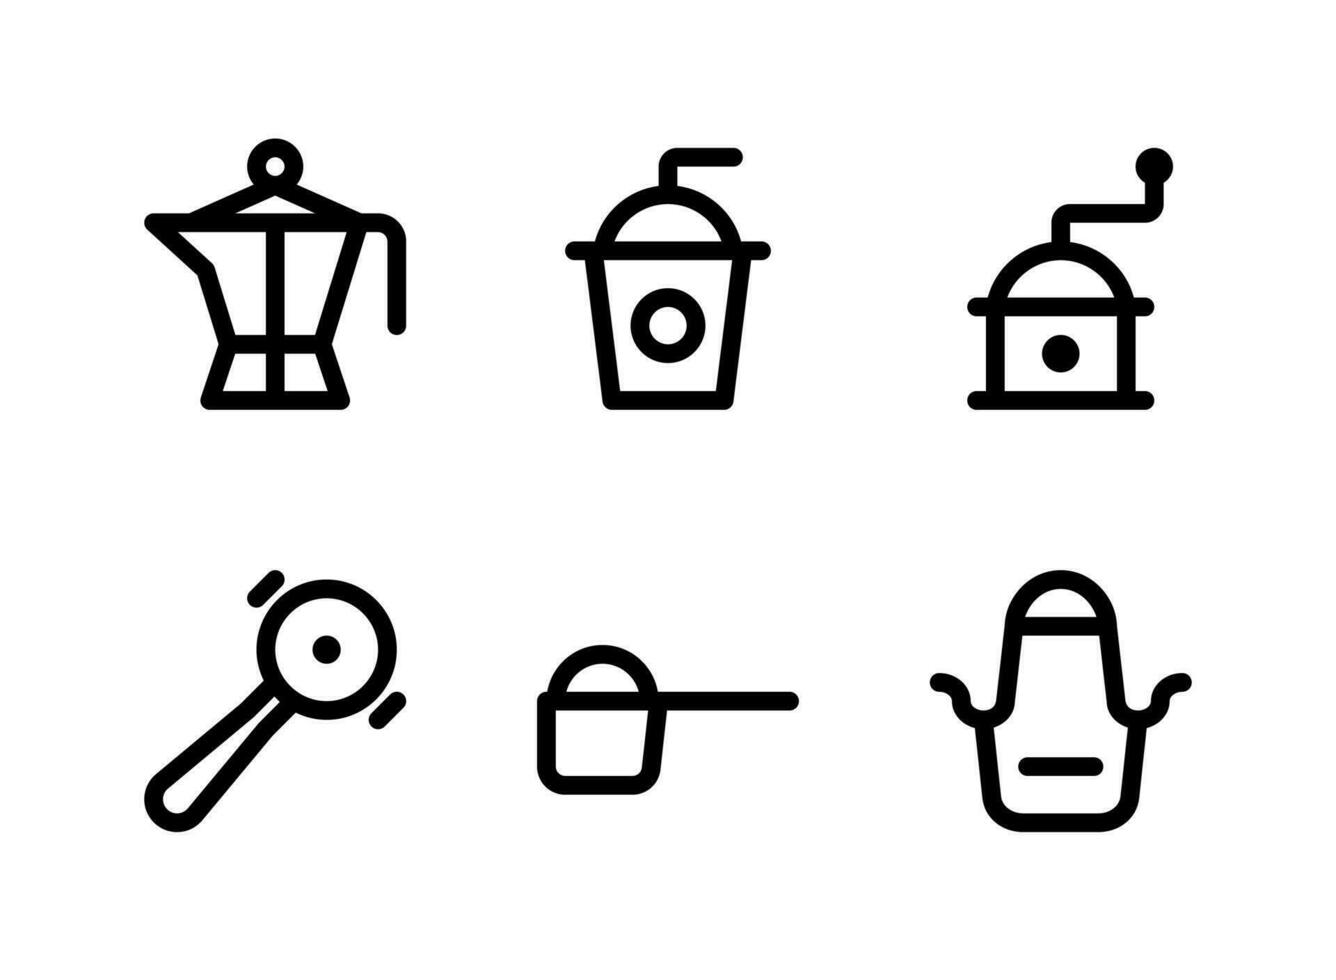 semplice set di icone di linea del vettore relative alla caffetteria. contiene icone come pentola, caffè freddo, macinacaffè, cucchiaio di zucchero e altro ancora.